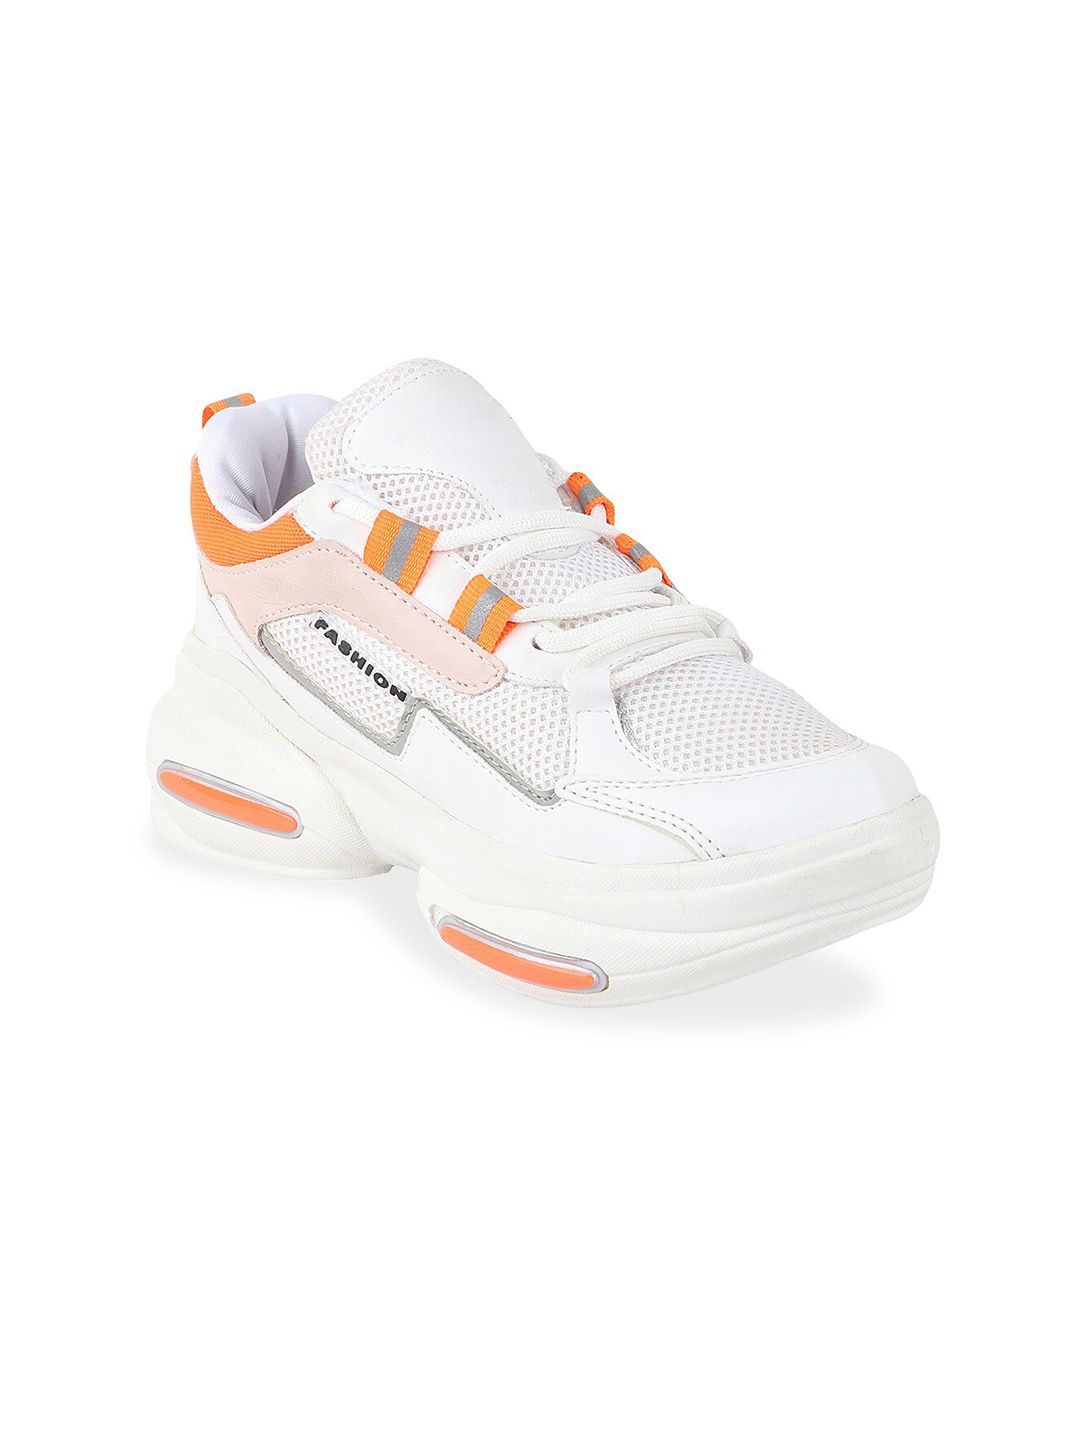 Shoetopia Women White & Orange Walking Non-Marking Shoes Price in India